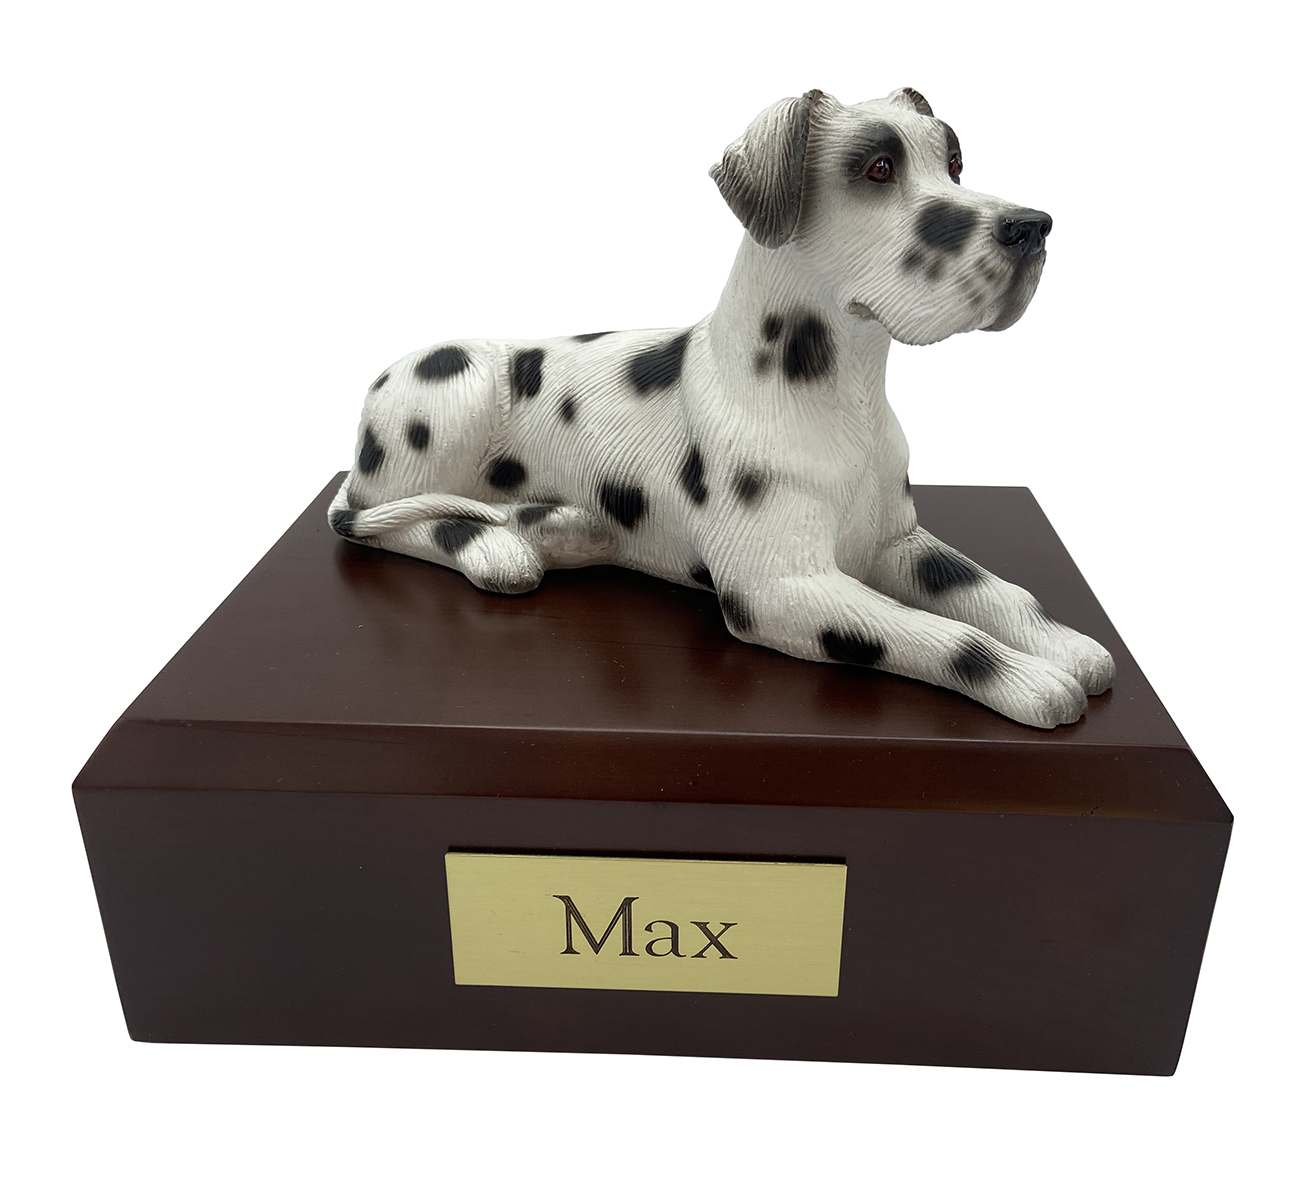 Dog, Great Dane, Harlequin (Ears Down) - Figurine Urn